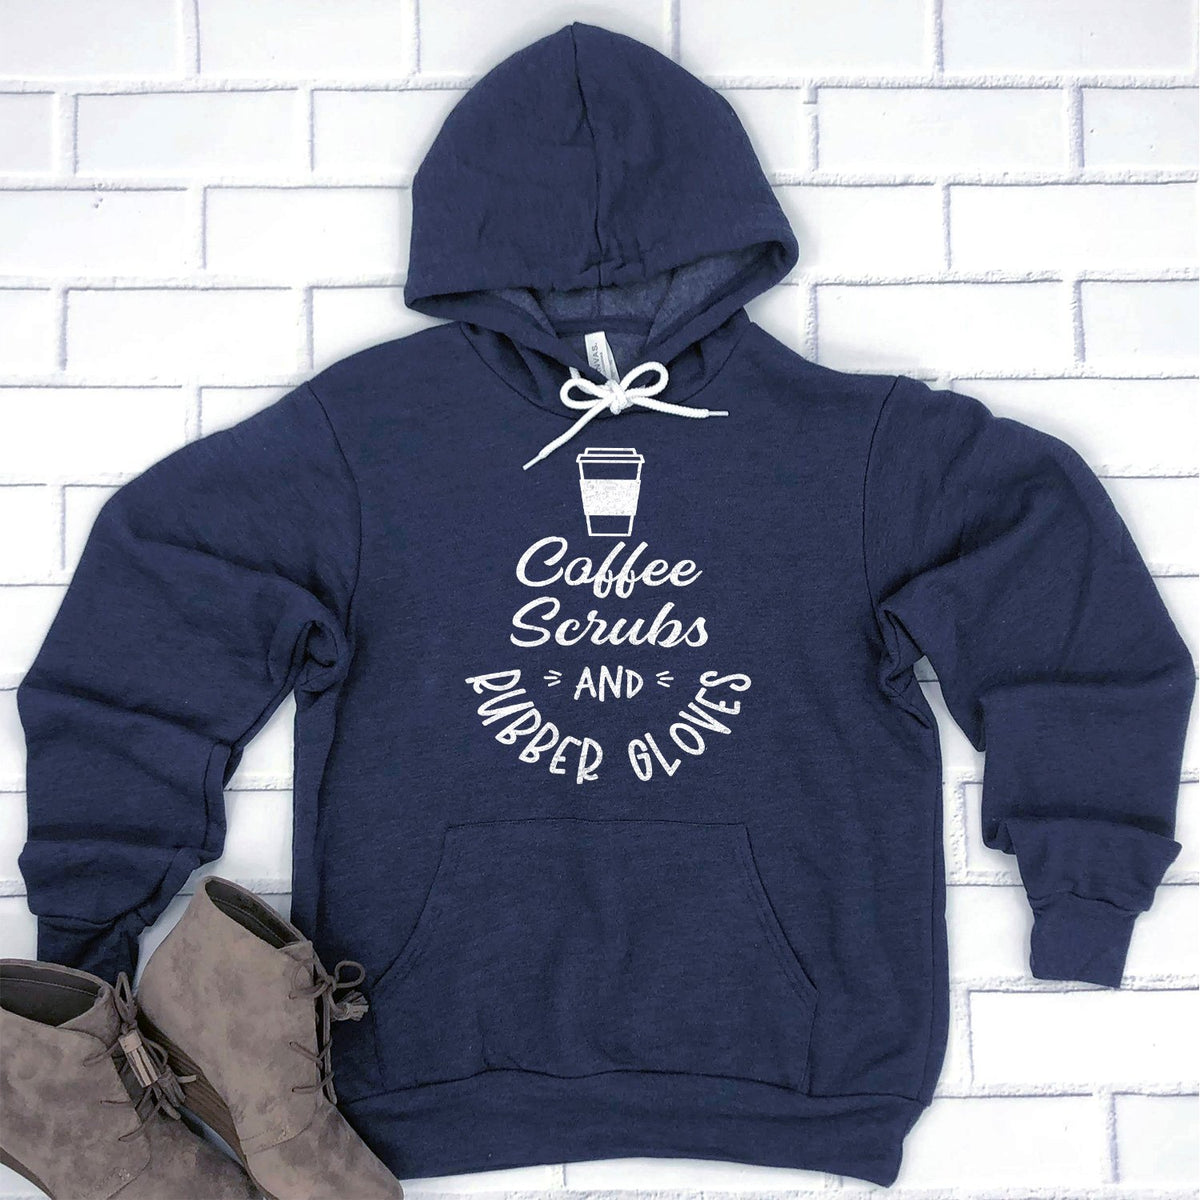 Coffee Scrubs and Rubber Gloves - Hoodie Sweatshirt